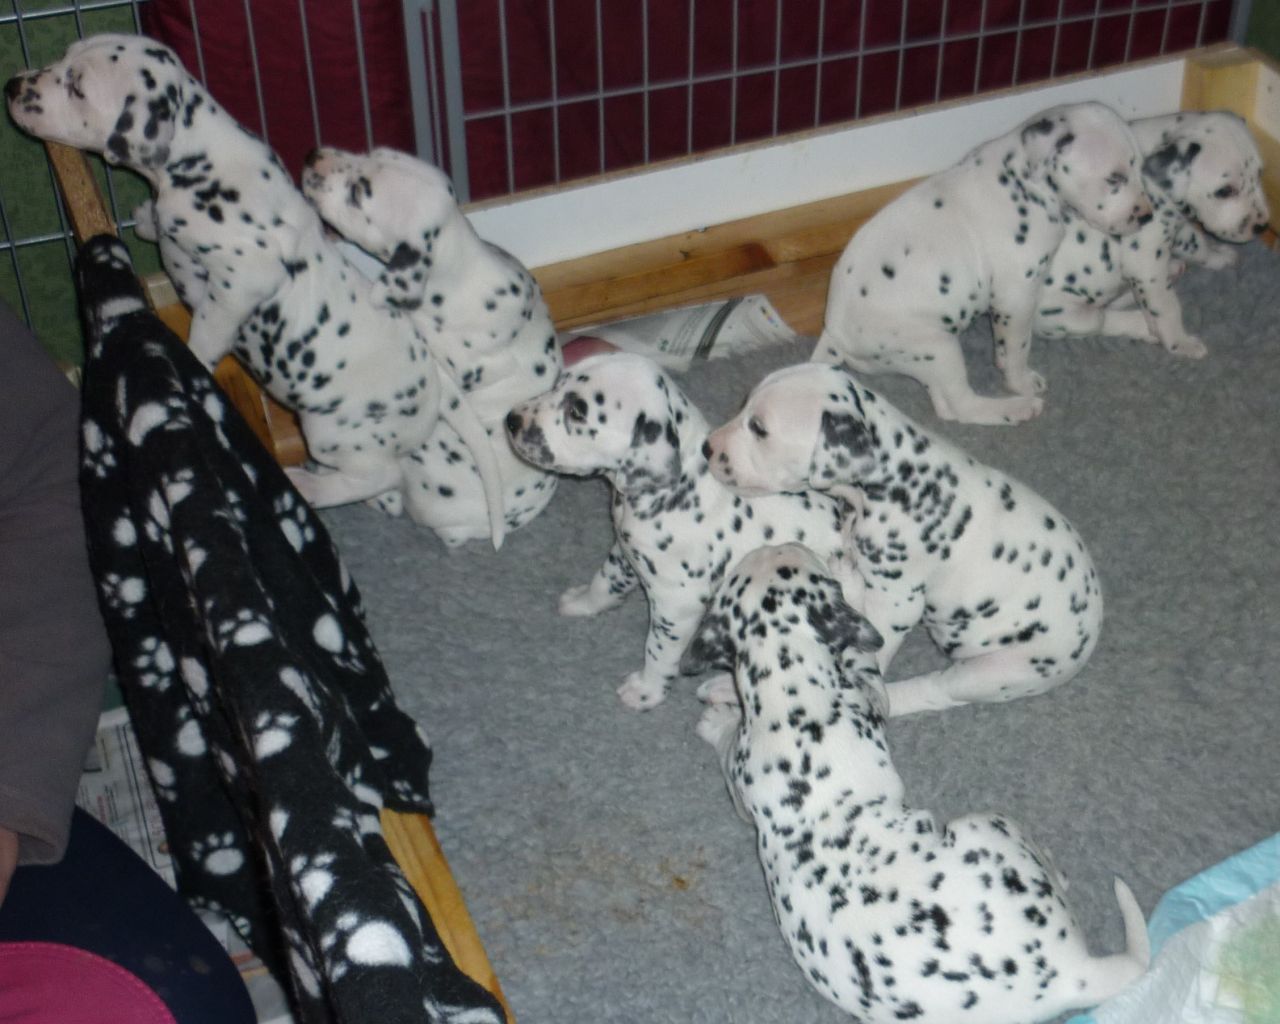 Kc Registered Dalmatian Puppies